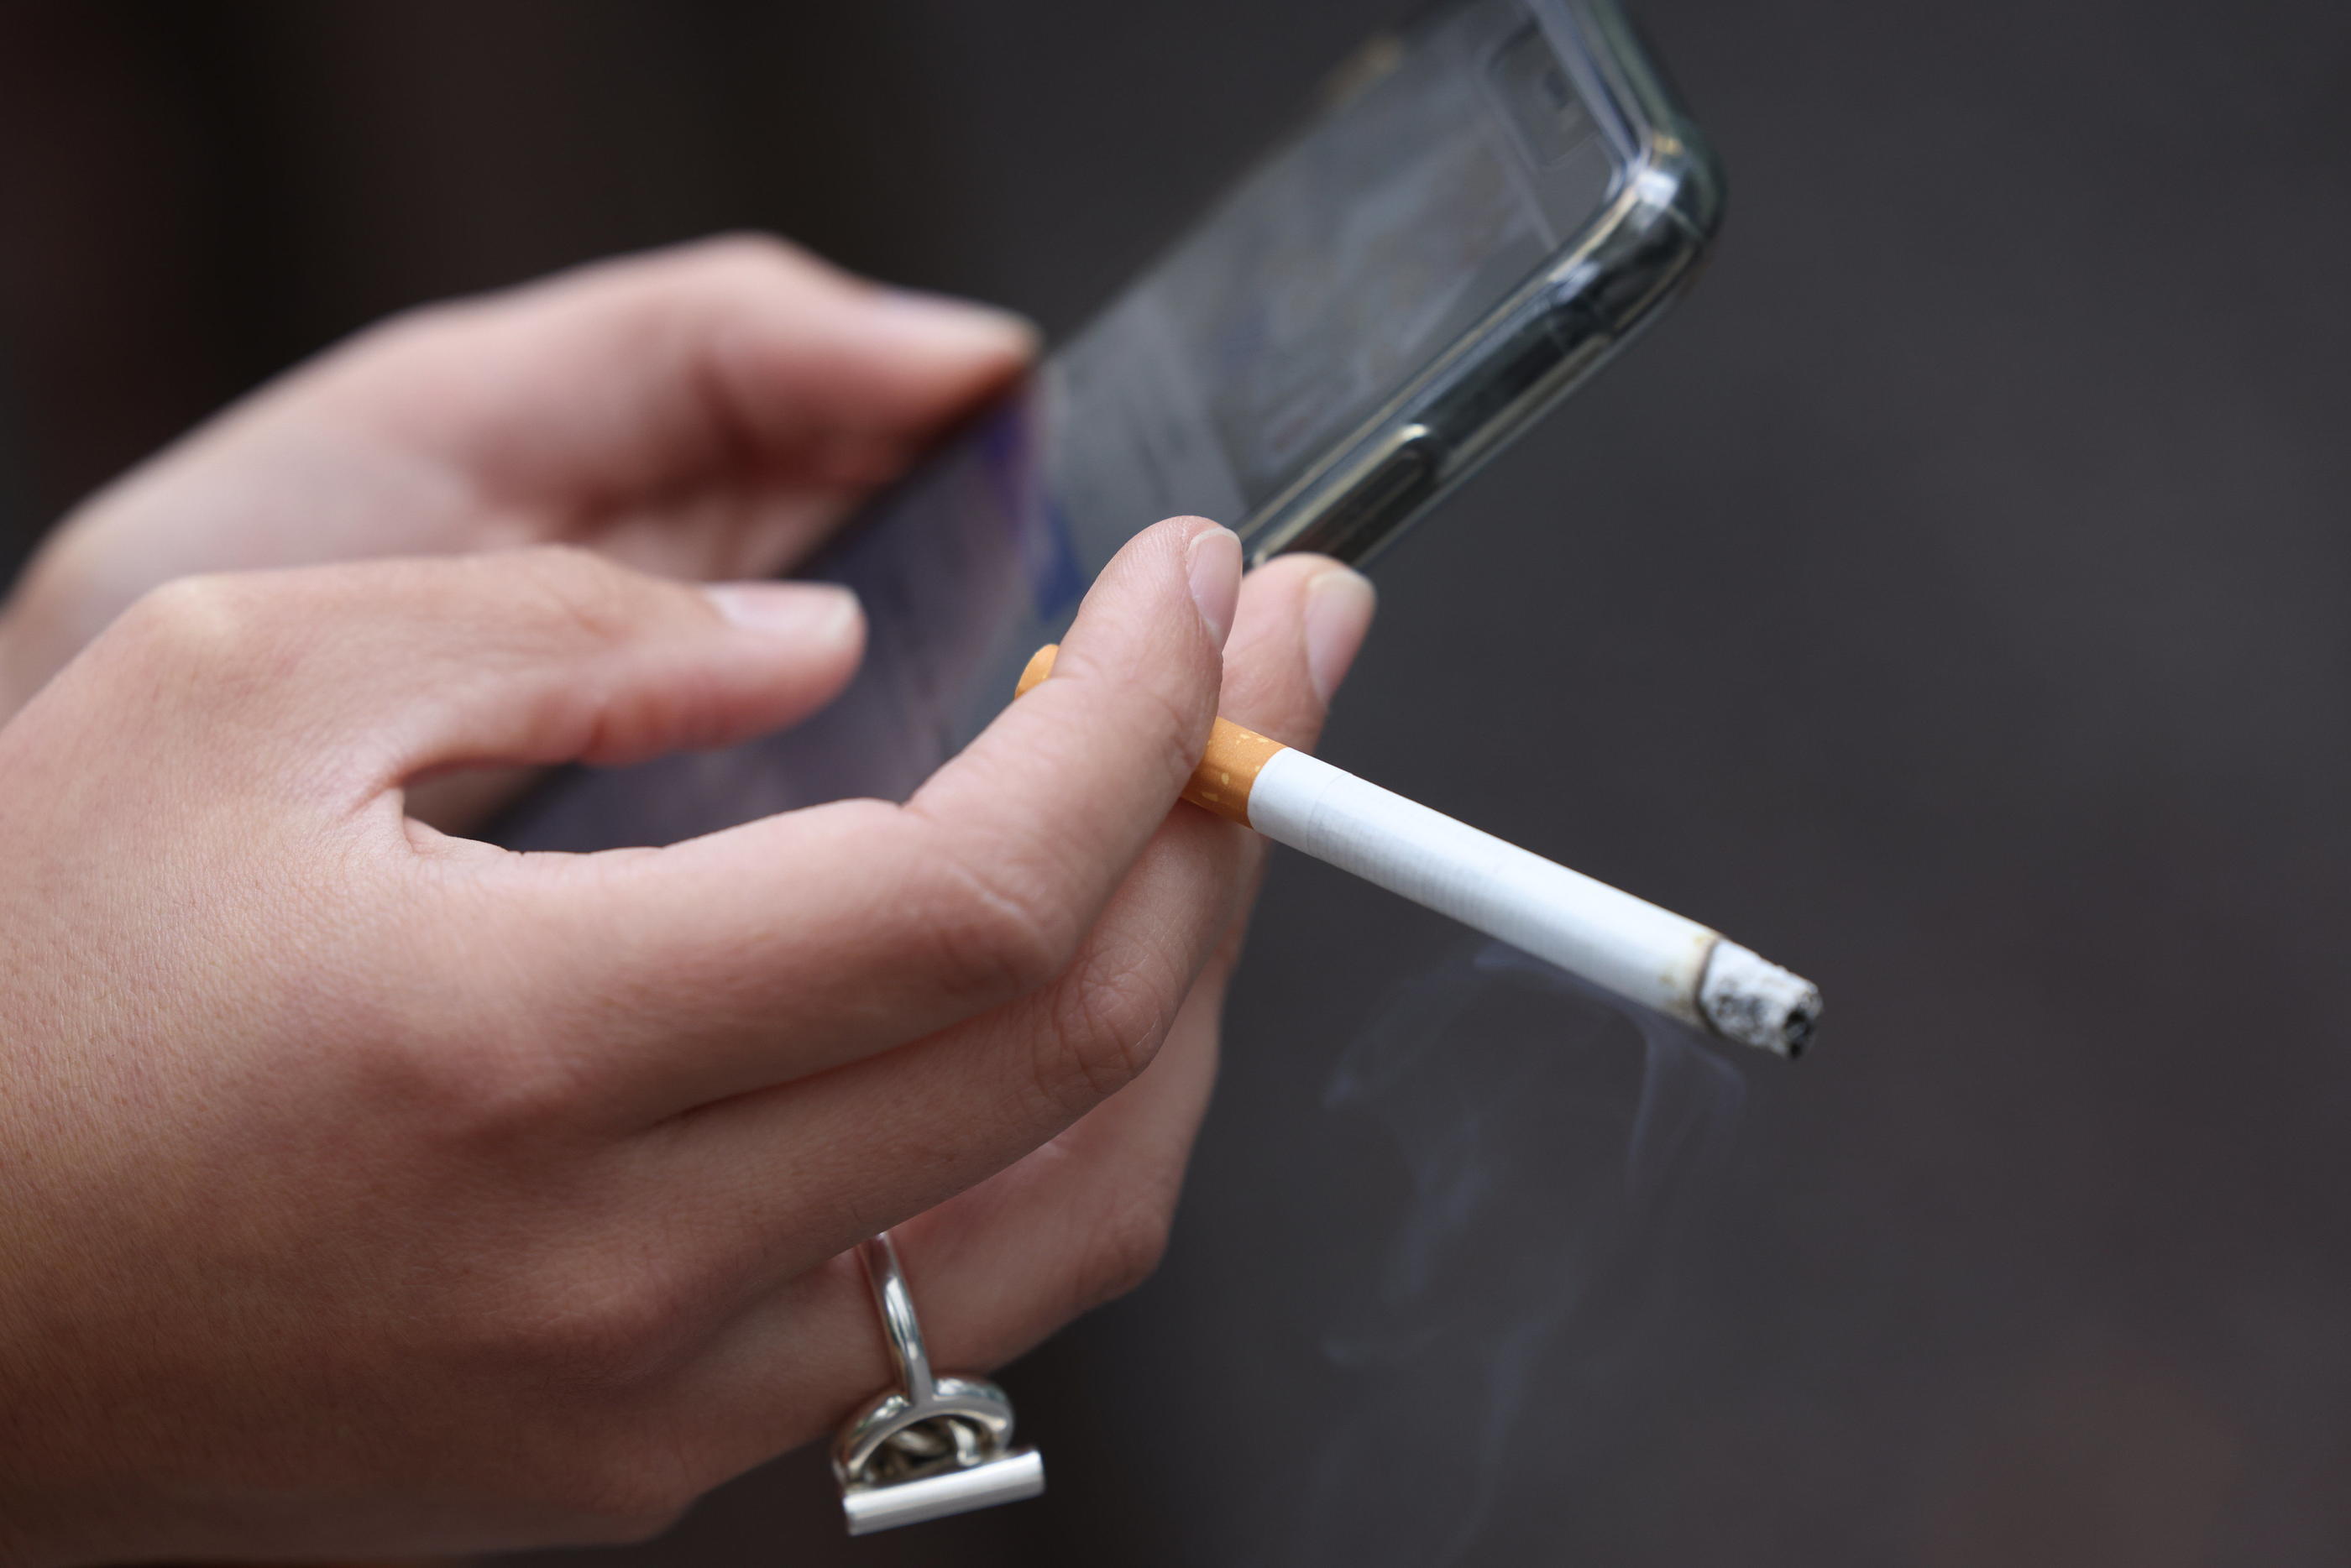 «Le facteur majeur est la consommation de tabac», notamment chez les femmes, insiste la présidente du Réseau français des registres de cancers (Illustration). LP/Arnaud Journois